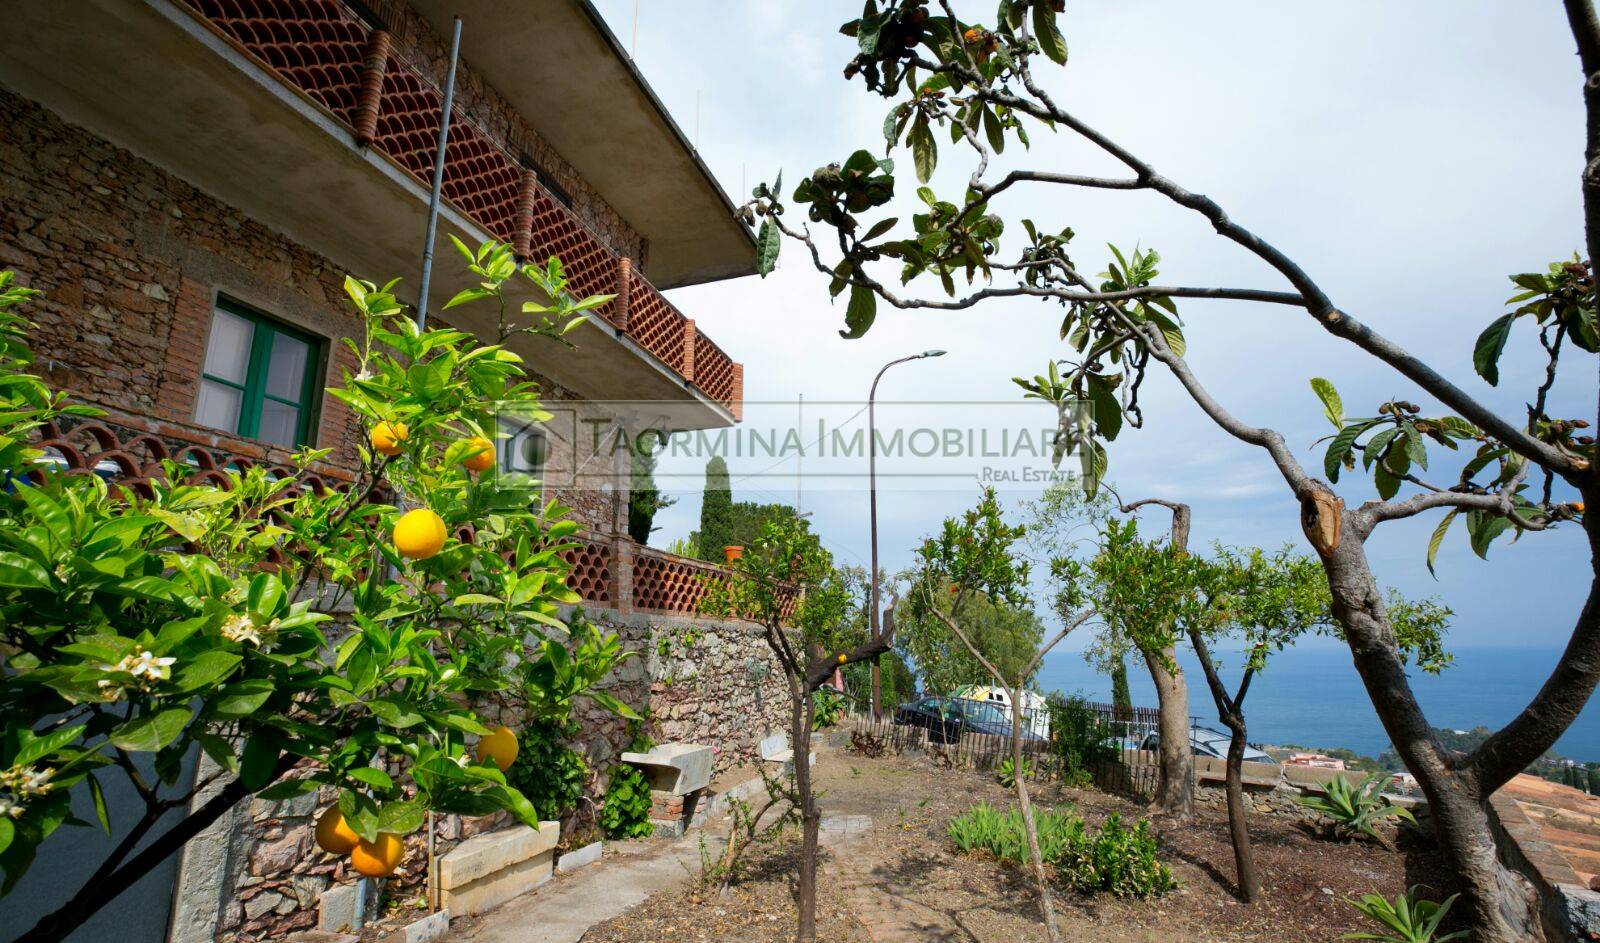 Villa in vendita a Taormina, 6 locali, zona ro, Trattative riservate | PortaleAgenzieImmobiliari.it